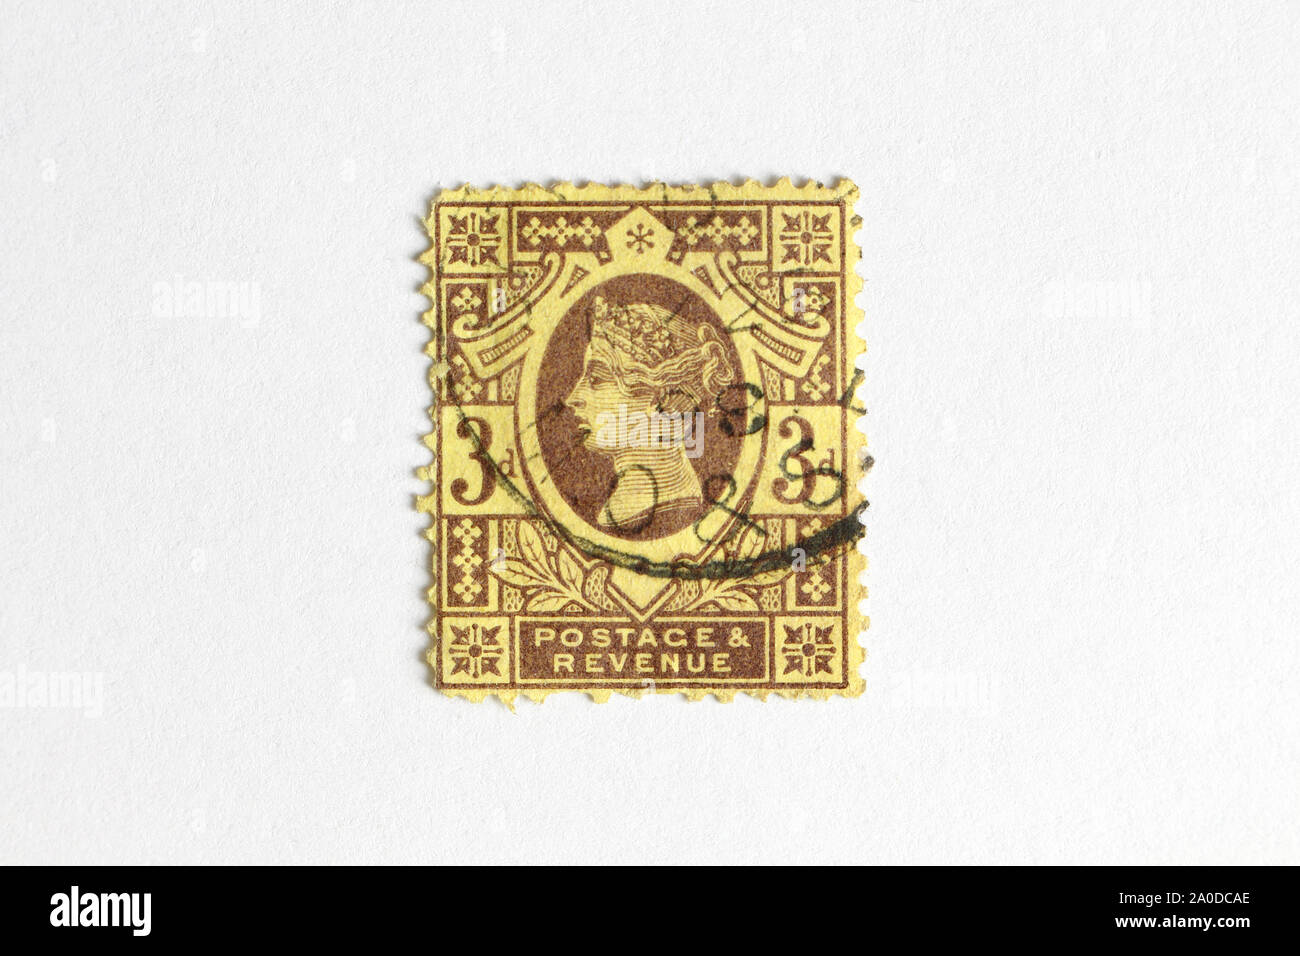 La reine Victoria, timbre-poste britannique de trois pence, fond blanc Banque D'Images